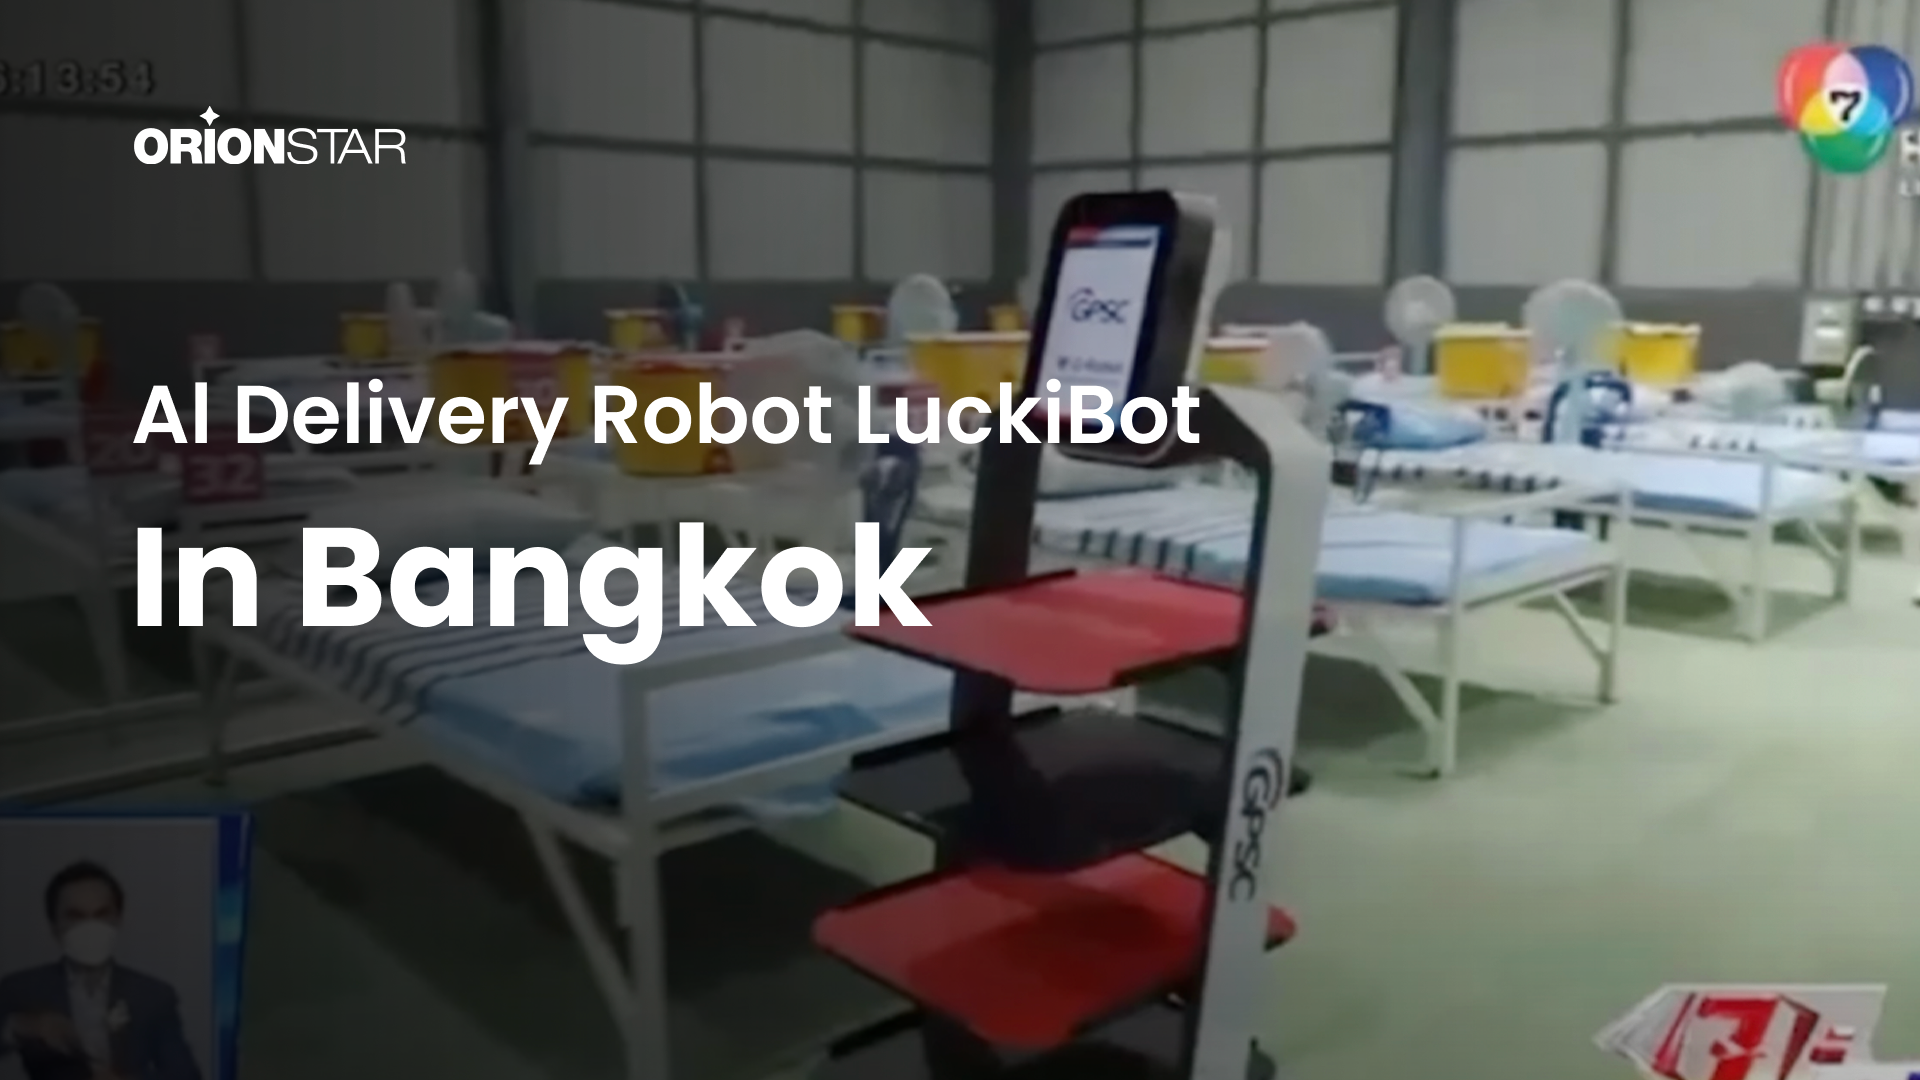 ORION STARのロボットはバンコクのフィールド病院で働いています